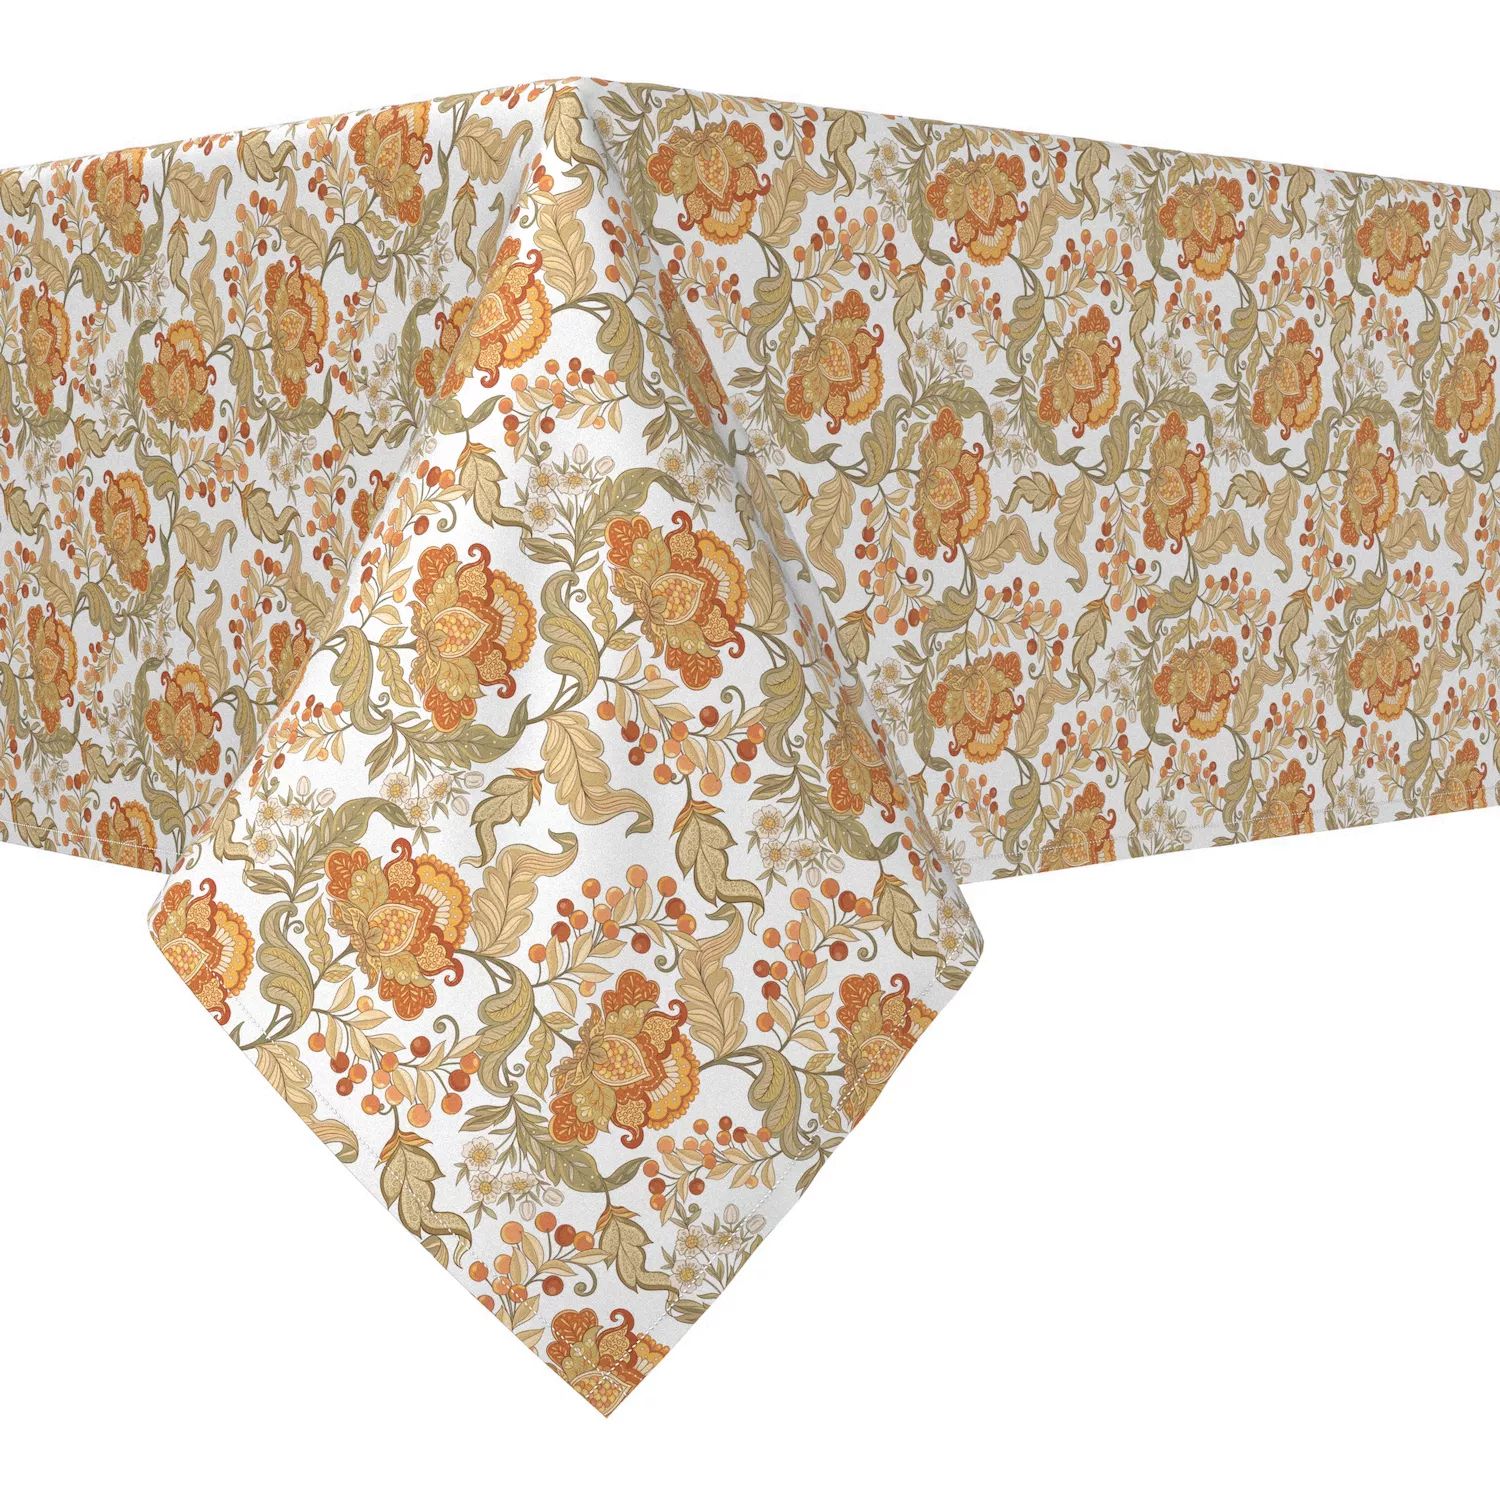 Прямоугольная скатерть, 100 % хлопок, 52x120 дюймов, с цветочным принтом в винтажном стиле. скатерть кружевная в винтажном стиле хлопковая скатерть в клетку прямоугольная для кухни столовой